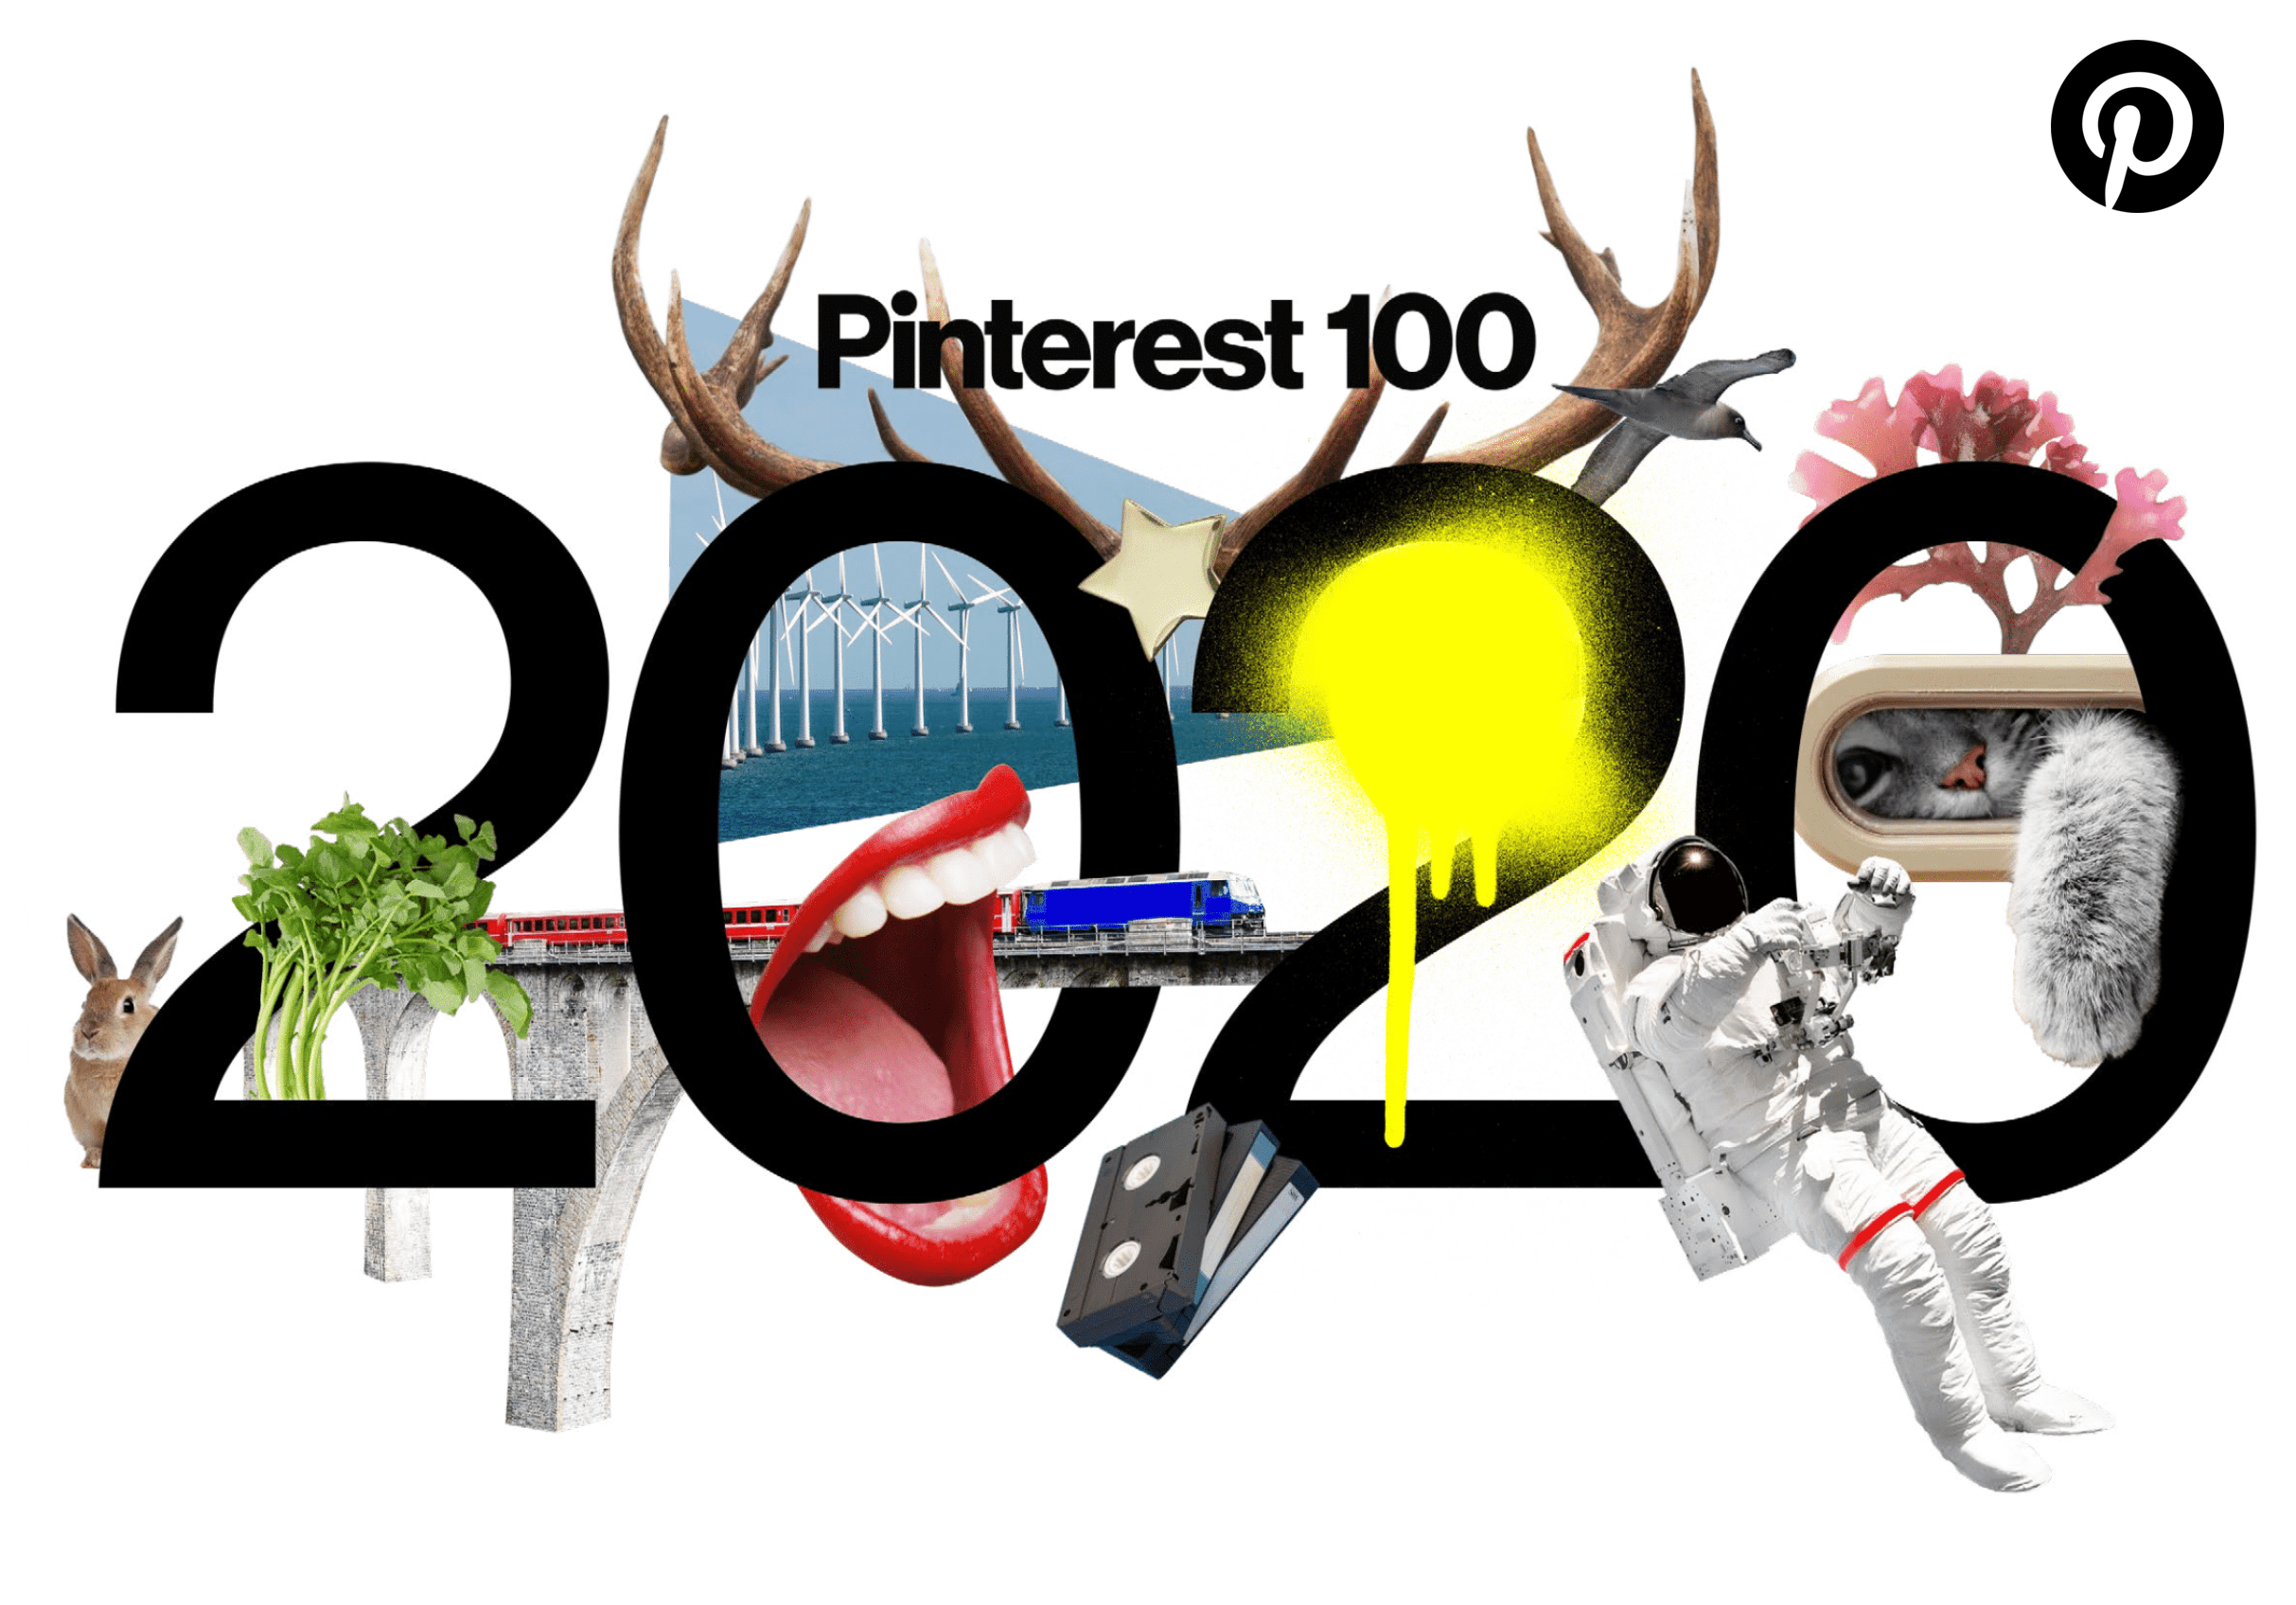 Pinterest 100